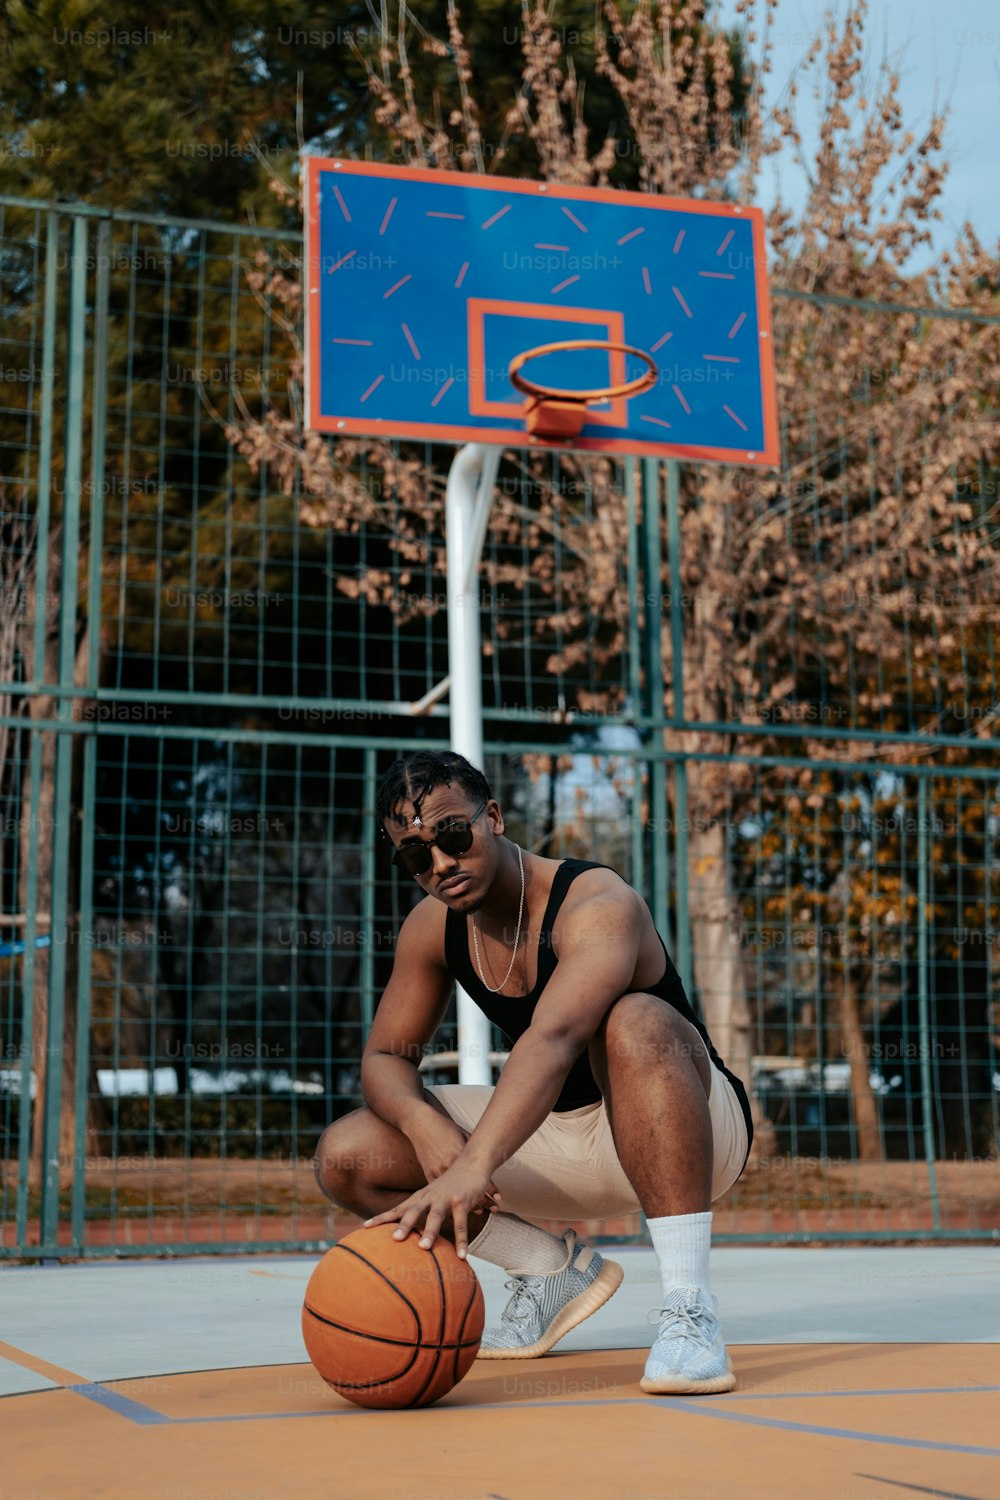 Ein Mann sitzt auf einem Basketballplatz und telefoniert mit einem Handy